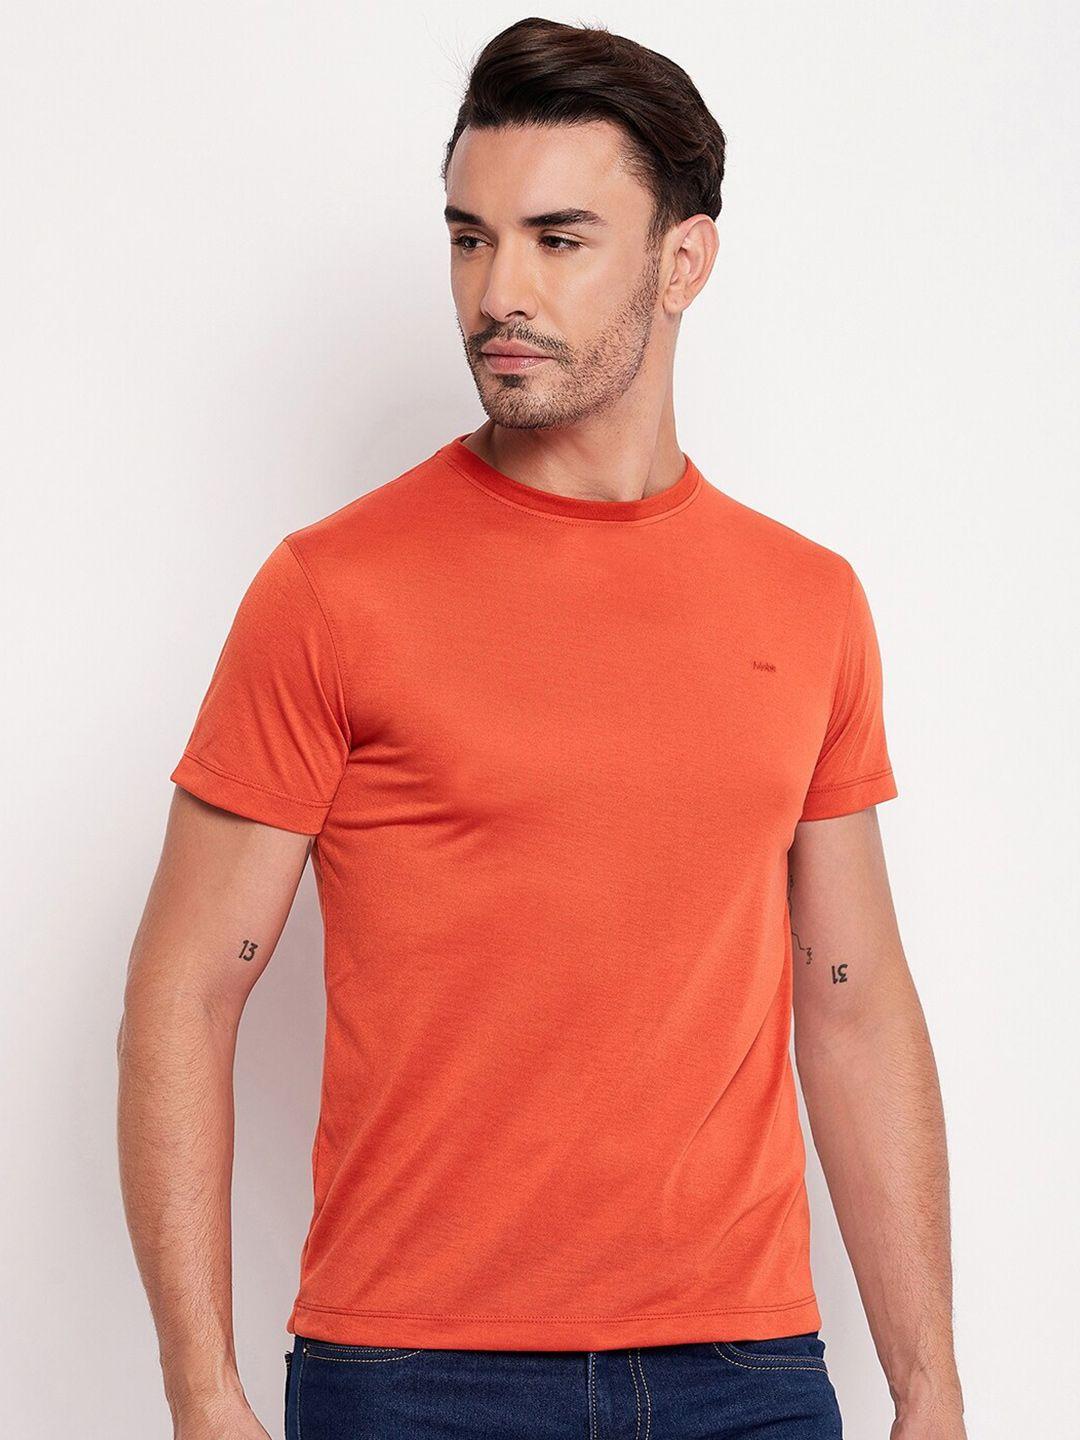 adobe half sleeve round neck cotton t-shirt